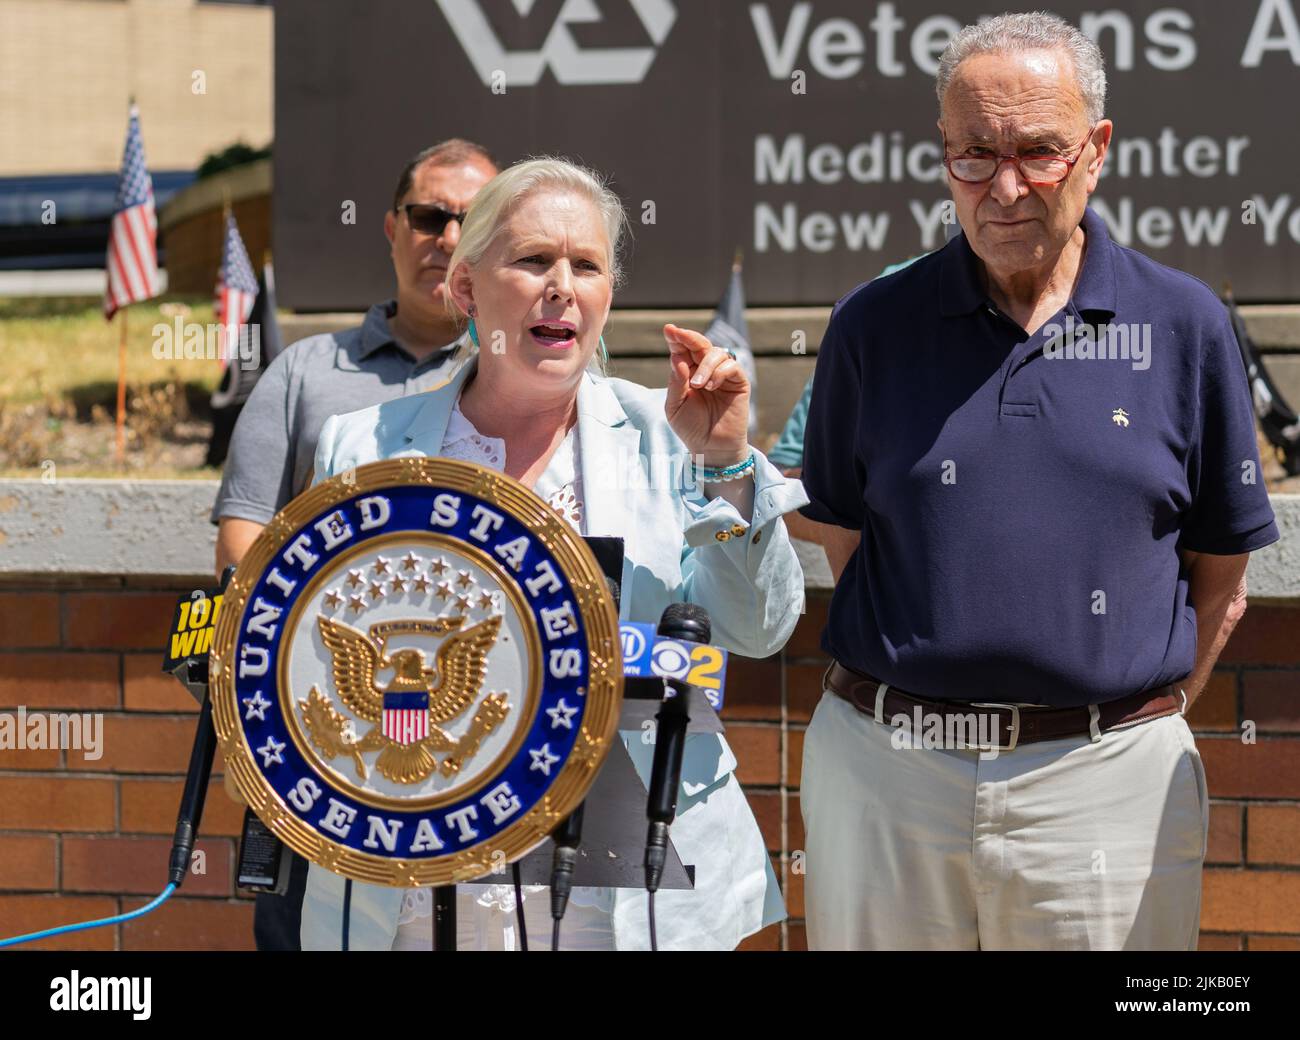 31 de julio de 2022, Nueva York, Estados Unidos: El Senador Chuck Schumer y  la Senadora Kirsten Gillibrand realizaron una conferencia de prensa en el  Centro Médico del Departamento de Veteranos Affiairs